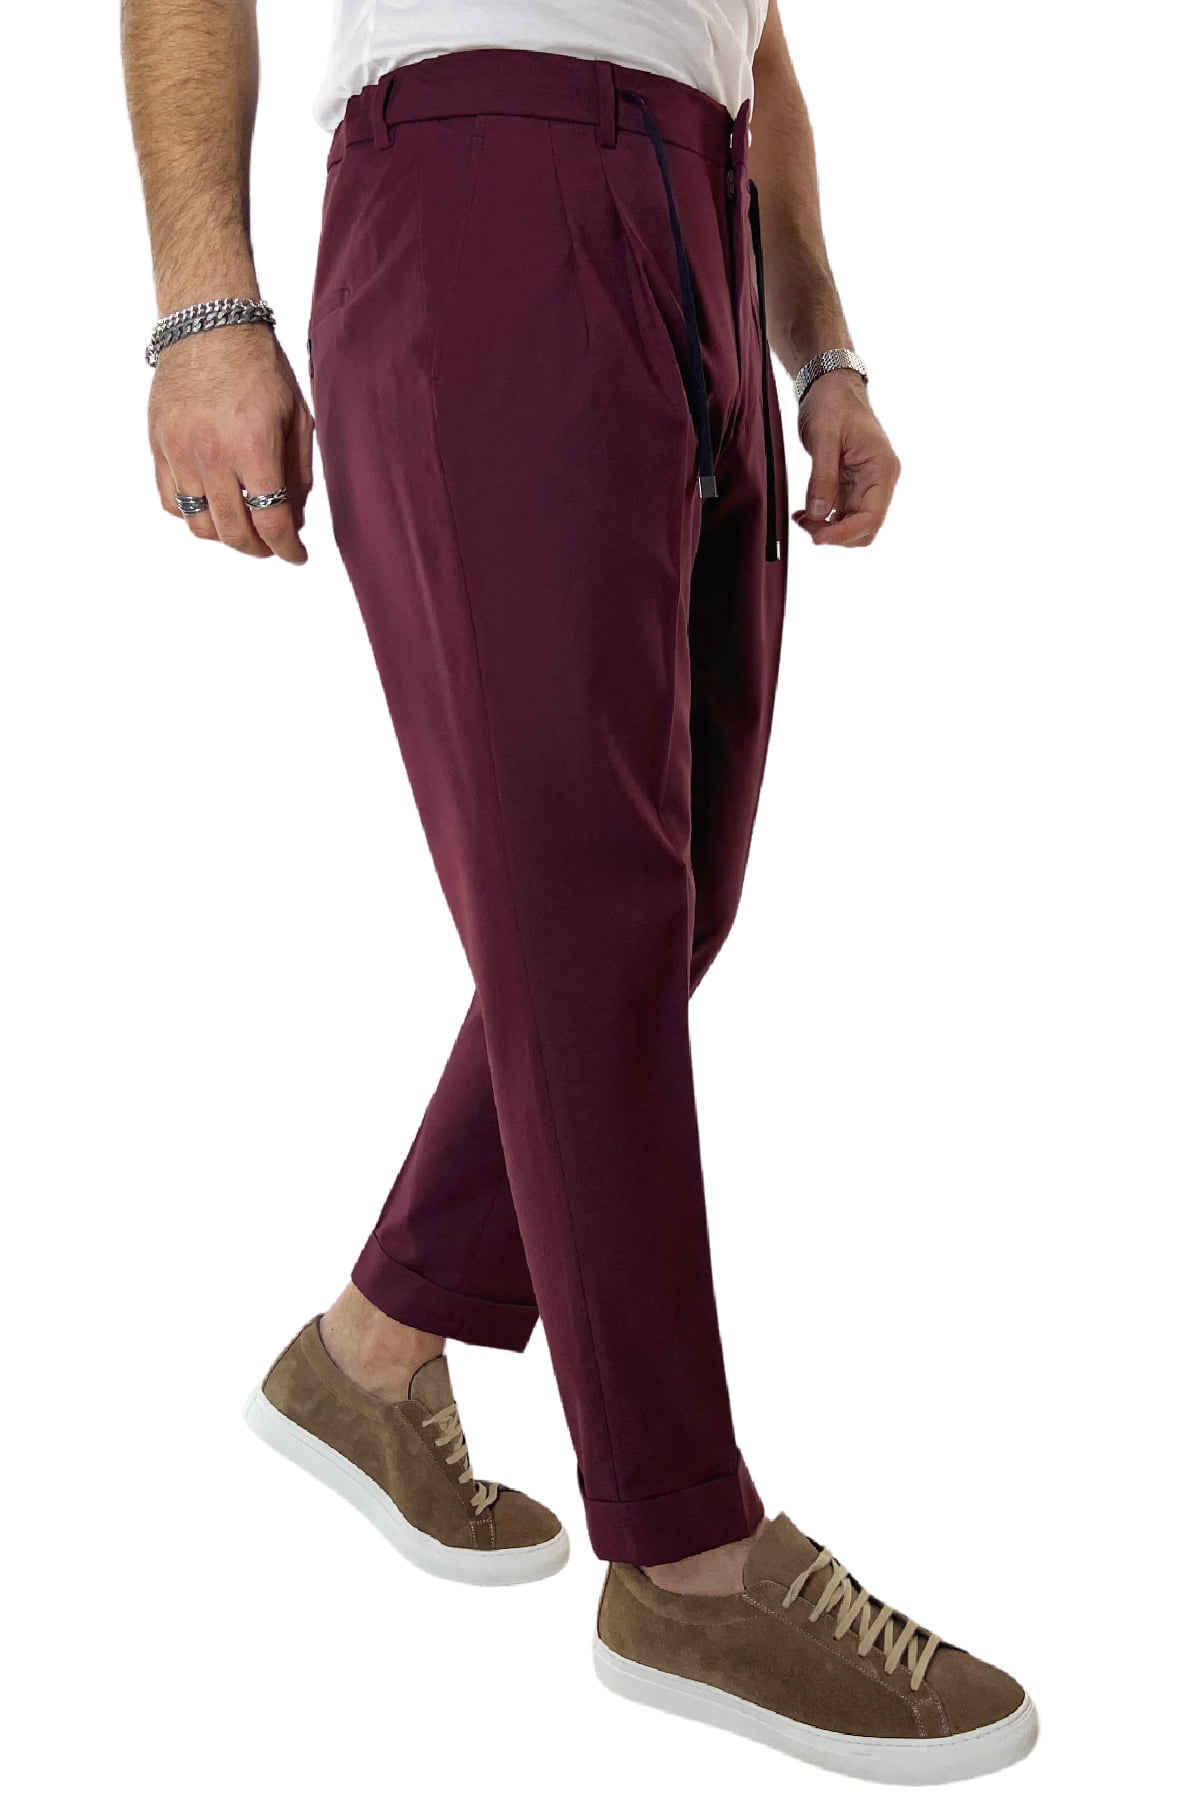 Pantalaccio uomo bordeaux in fresco lana tasca america con doppia pence e laccio in vita risvolto 4cm